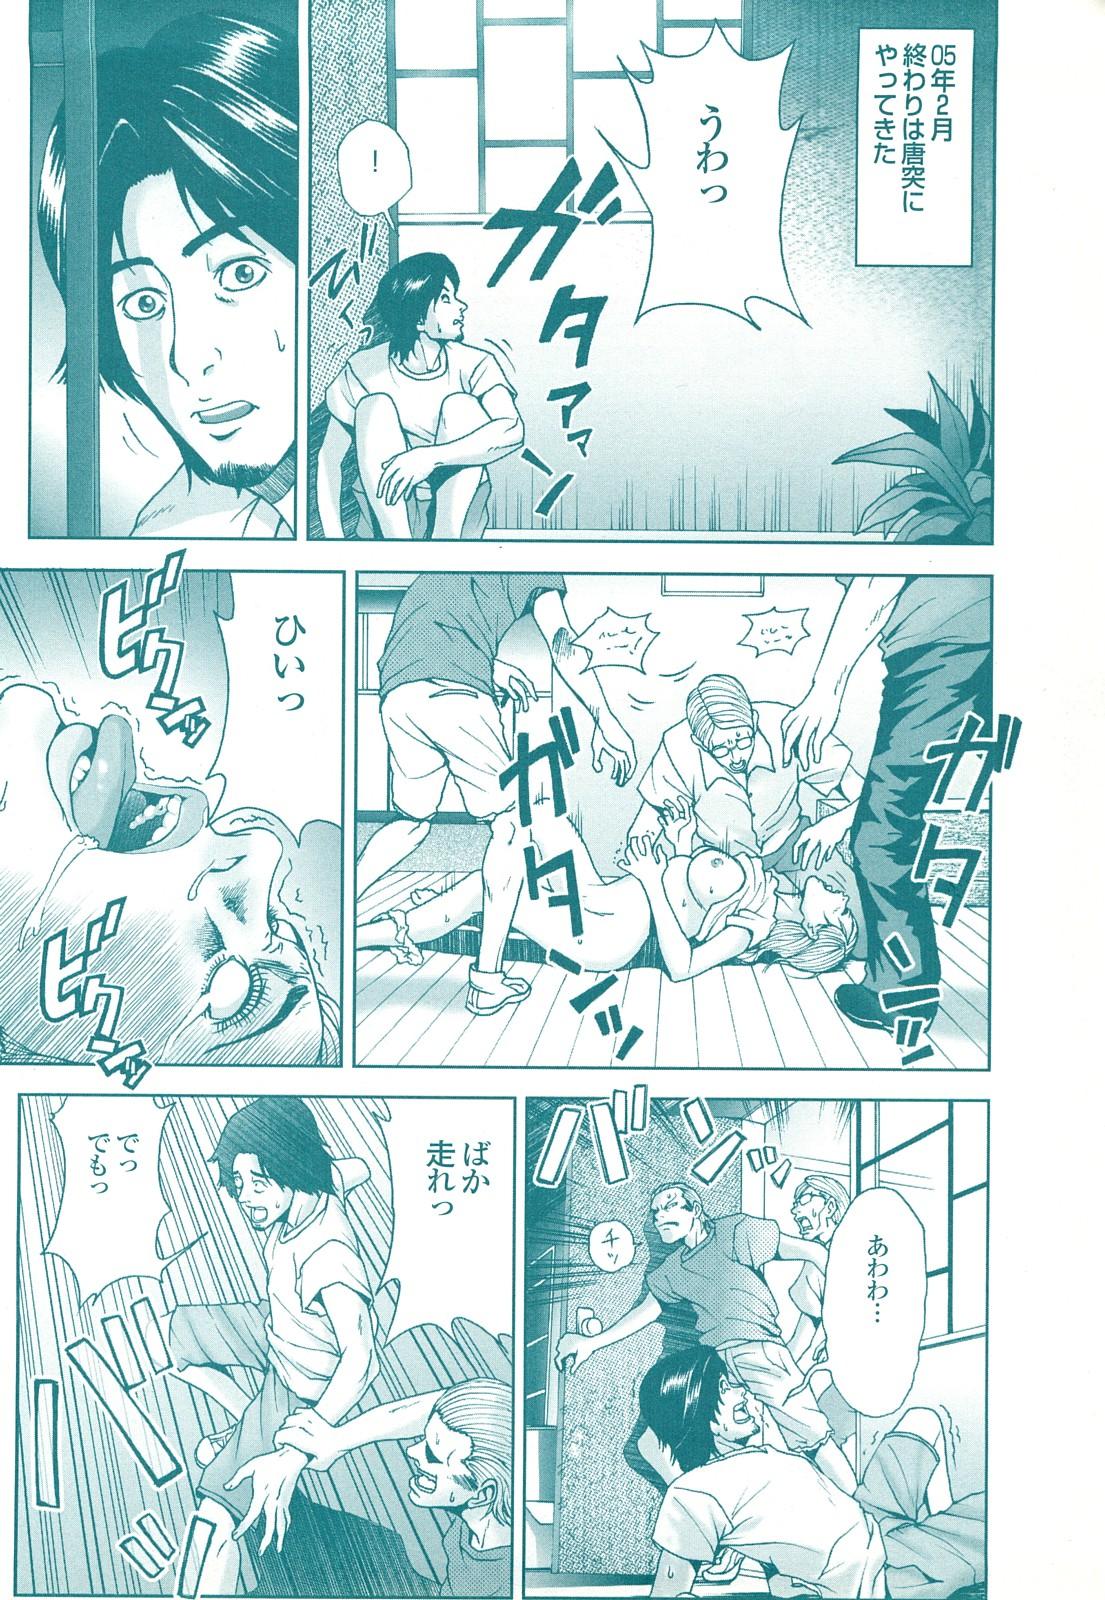 コミック裏モノJAPAN Vol.18 今井のりたつスペシャル号 137